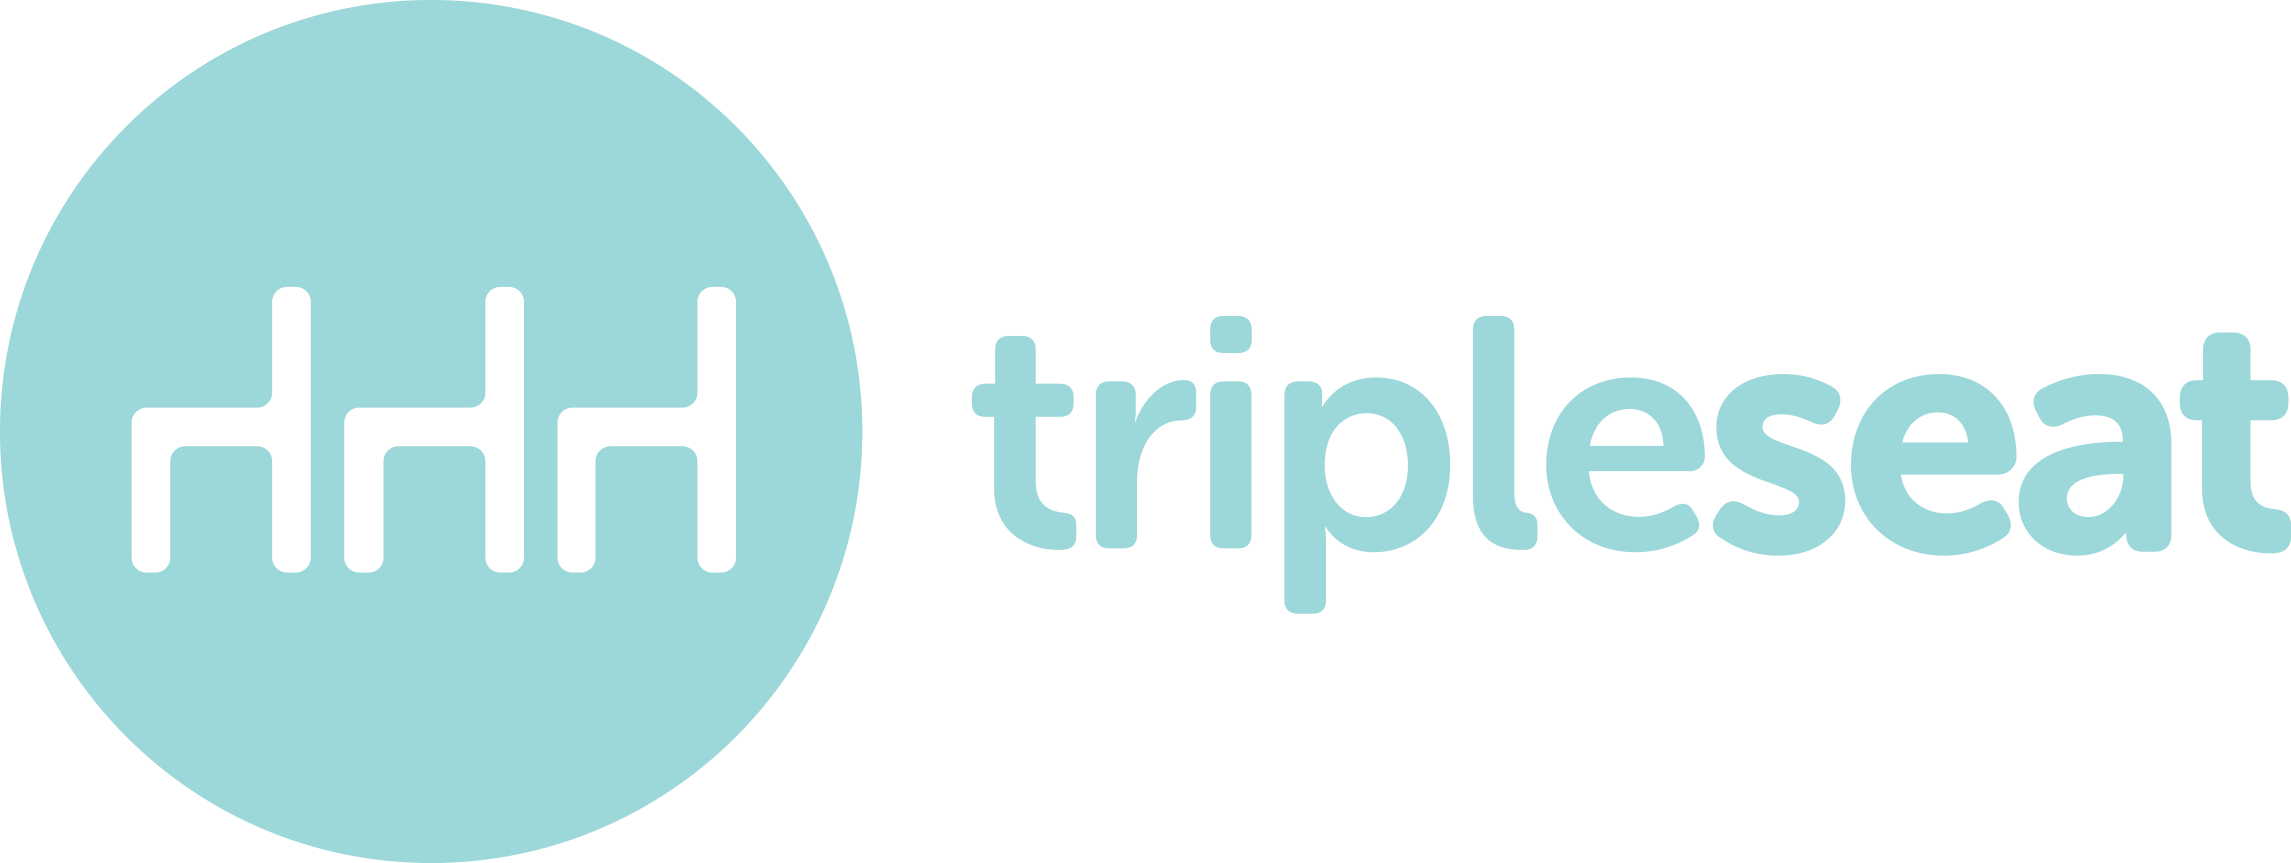 Tripleseat Software logo